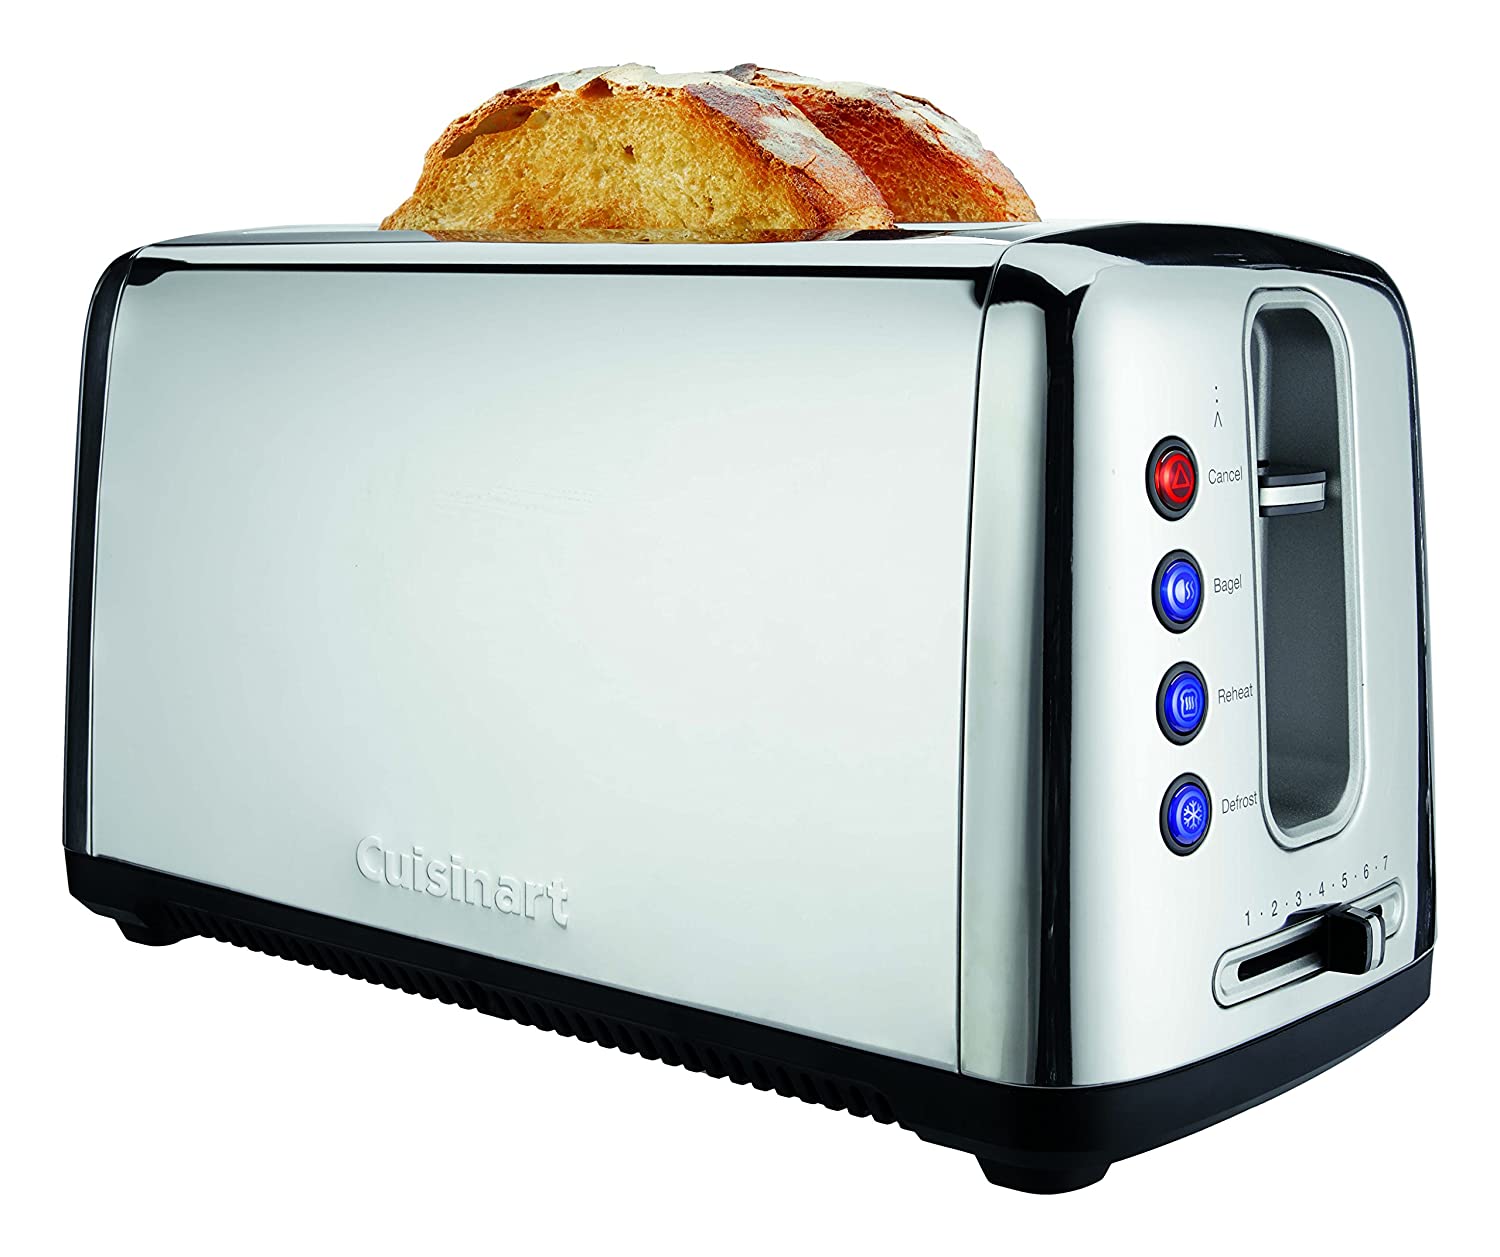 Best 2 slot toaster uk amazon